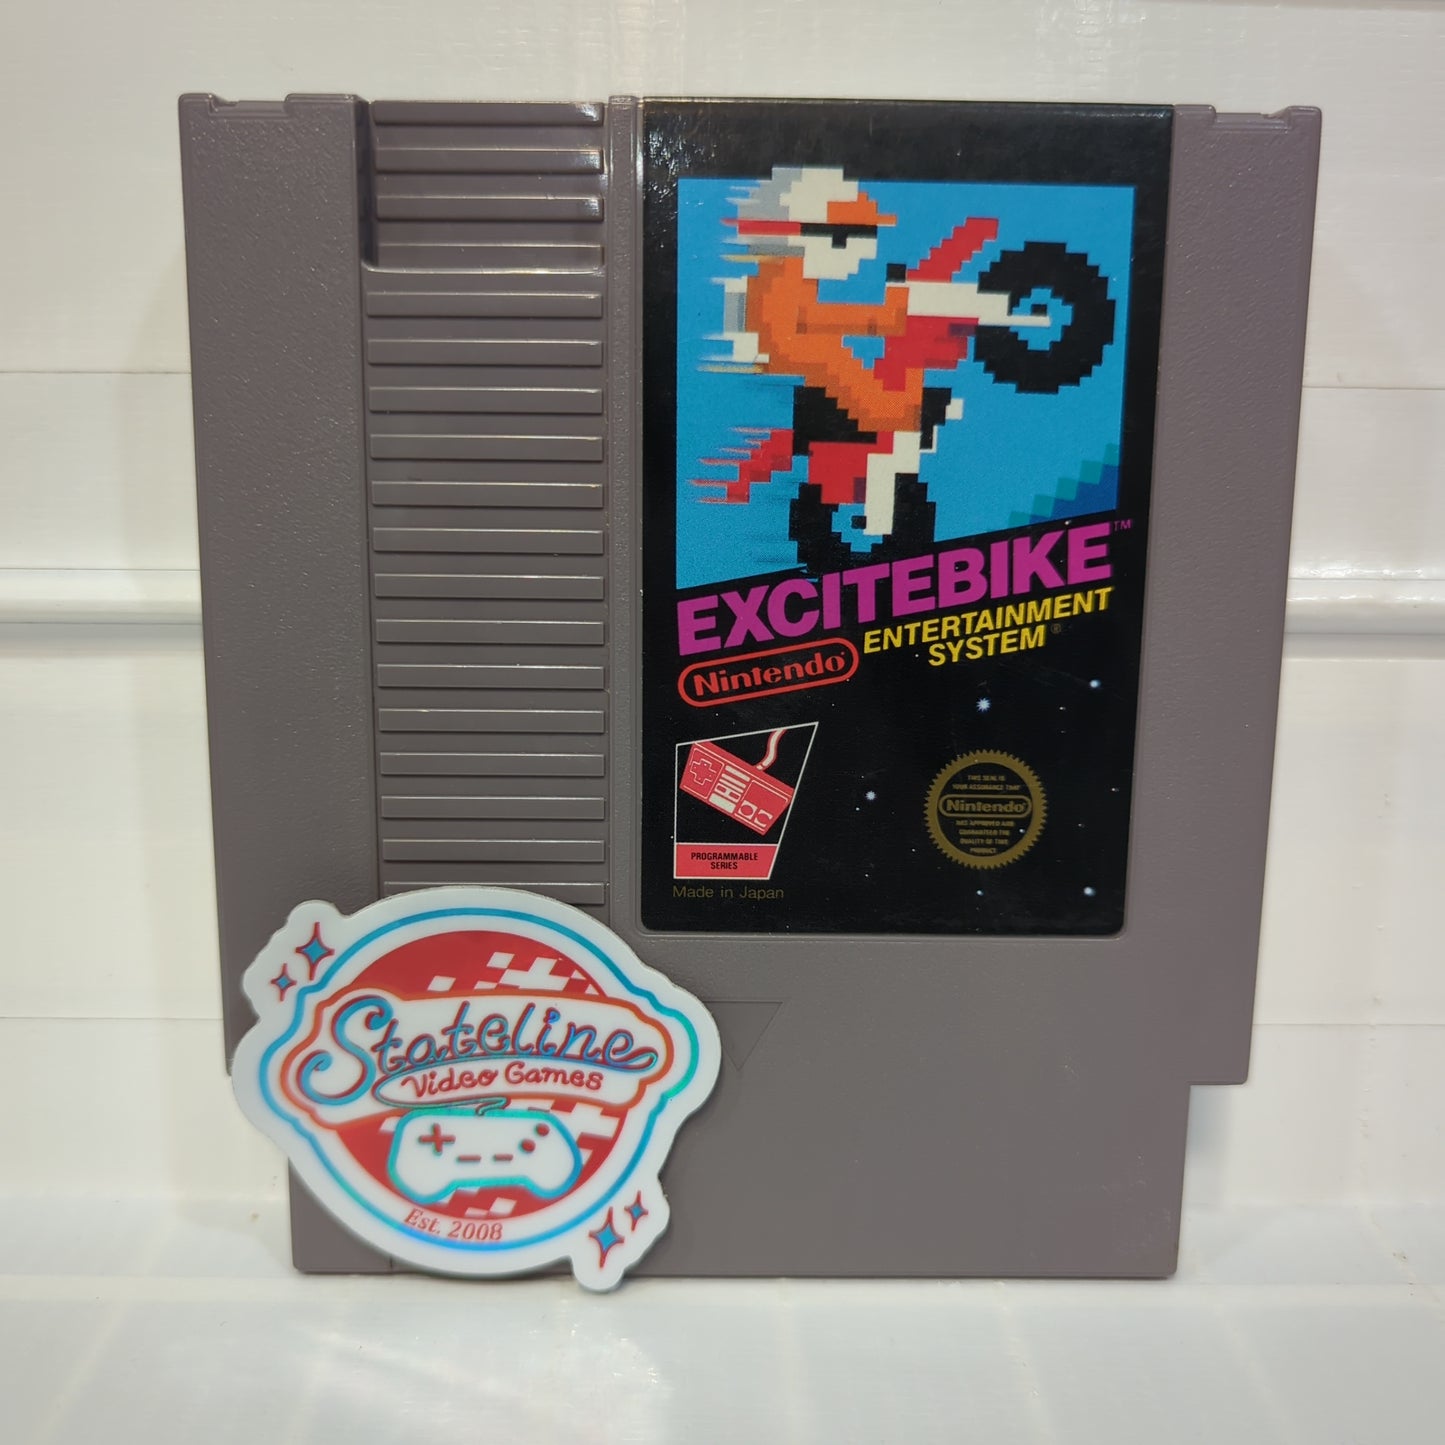 Excitebike - NES